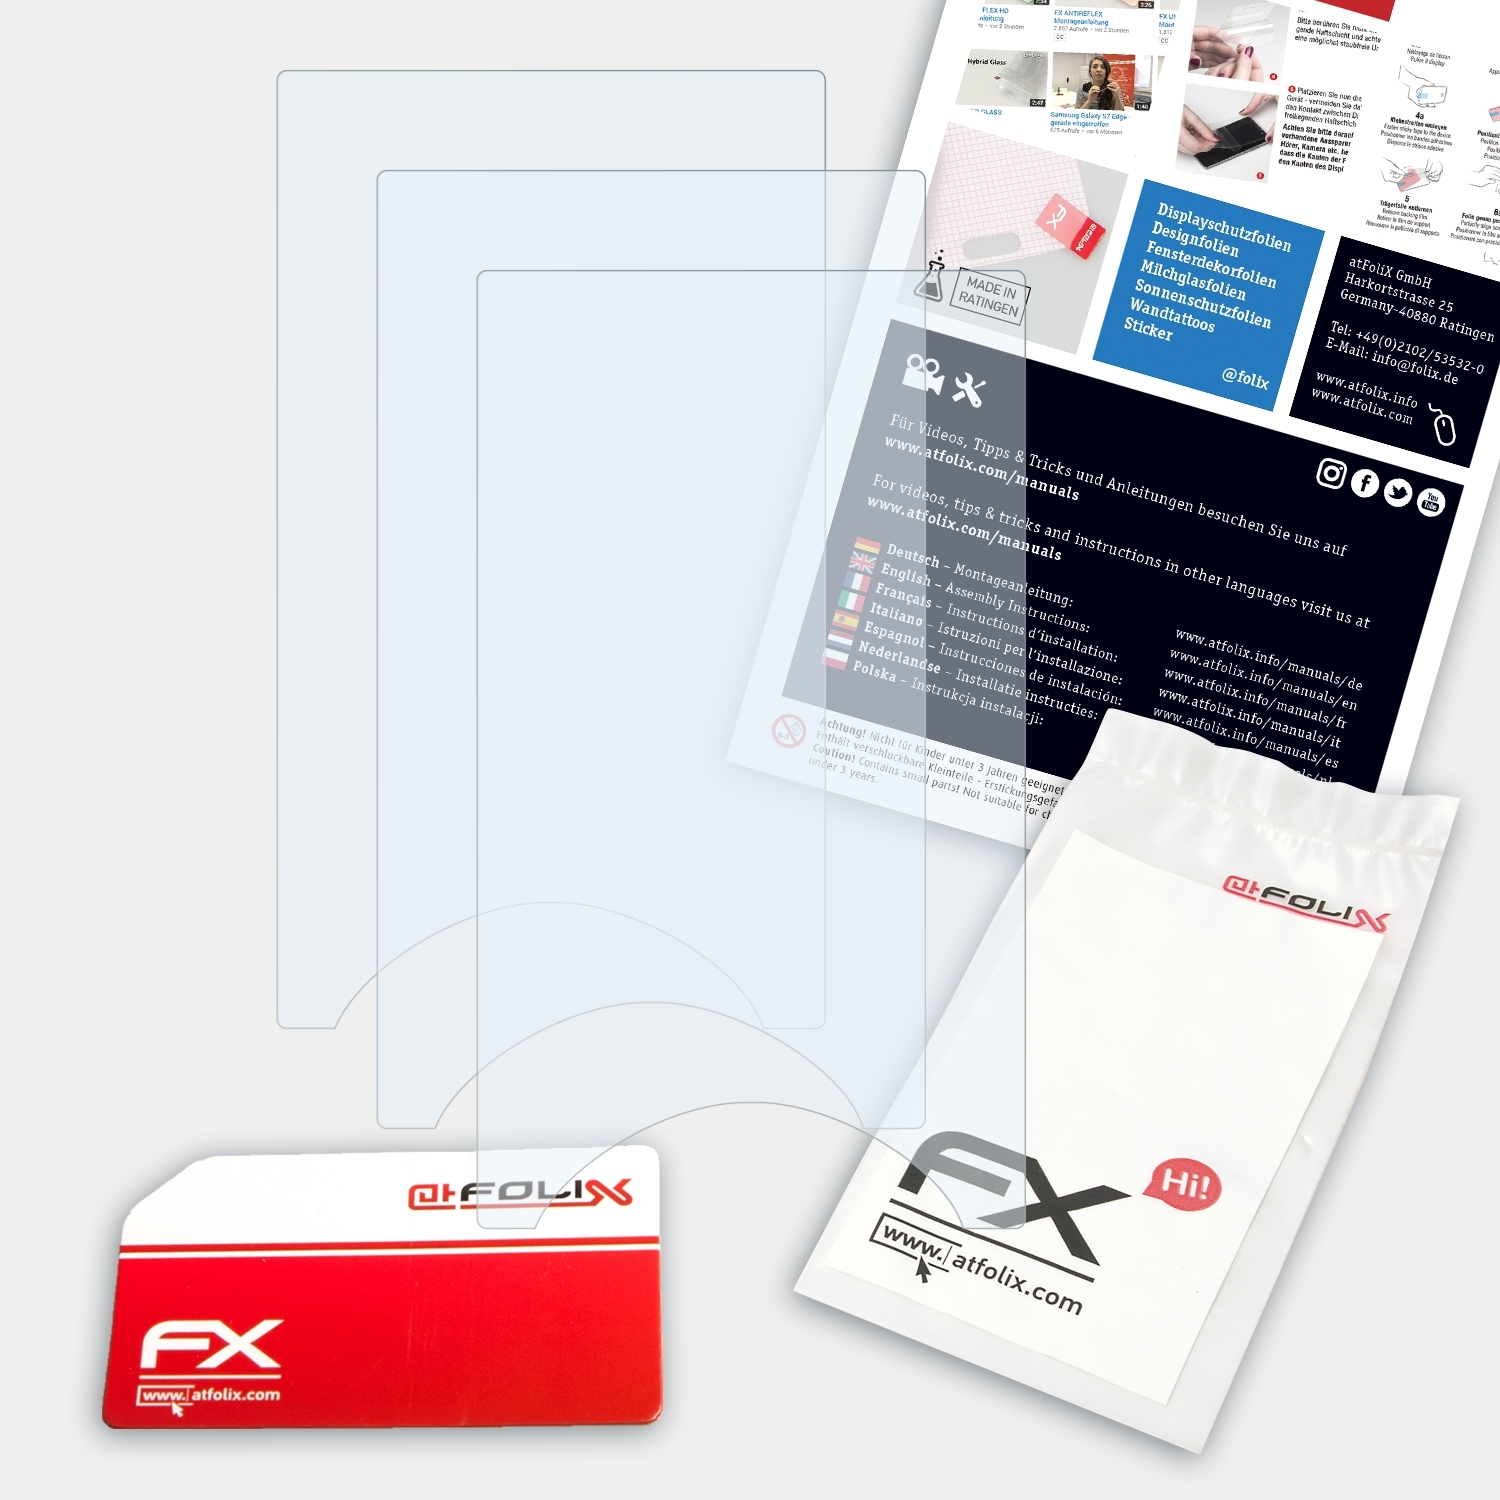 ATFOLIX 3x Sony FX-Clear Walkman Displayschutz(für NWZ-A845)